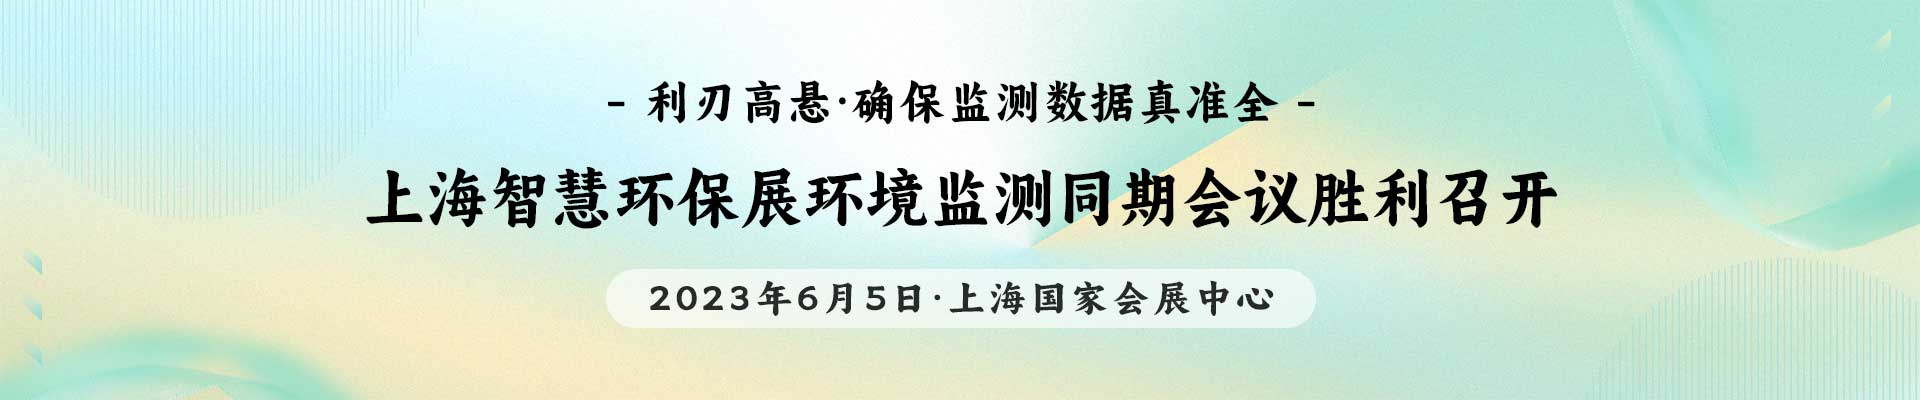 上海智慧环保展环境监测同期会议胜利召开